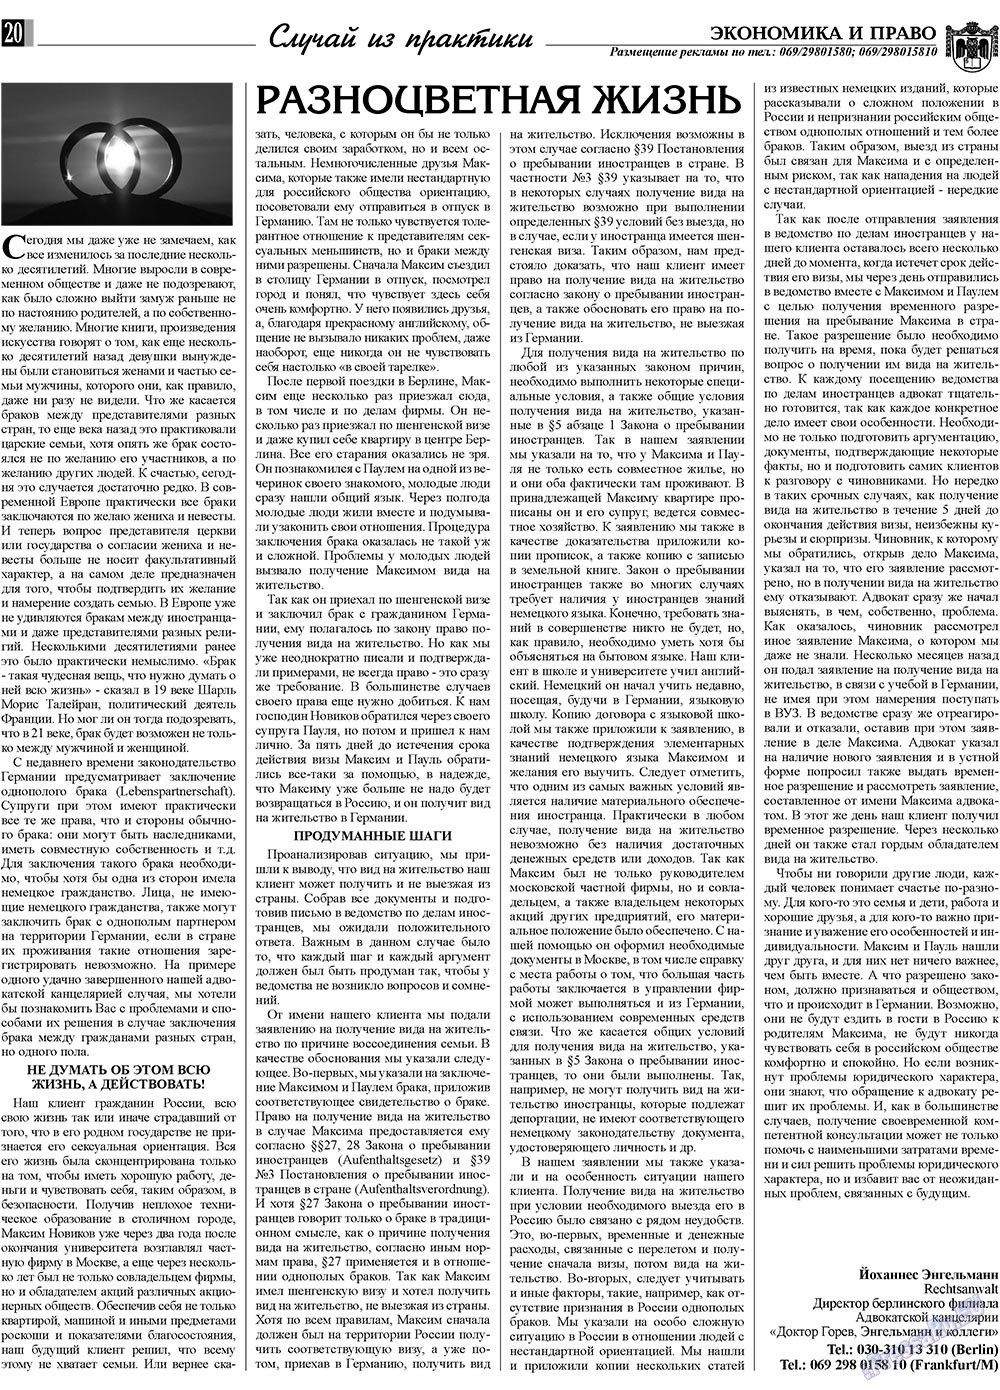 Экономика и право, газета. 2009 №10 стр.20